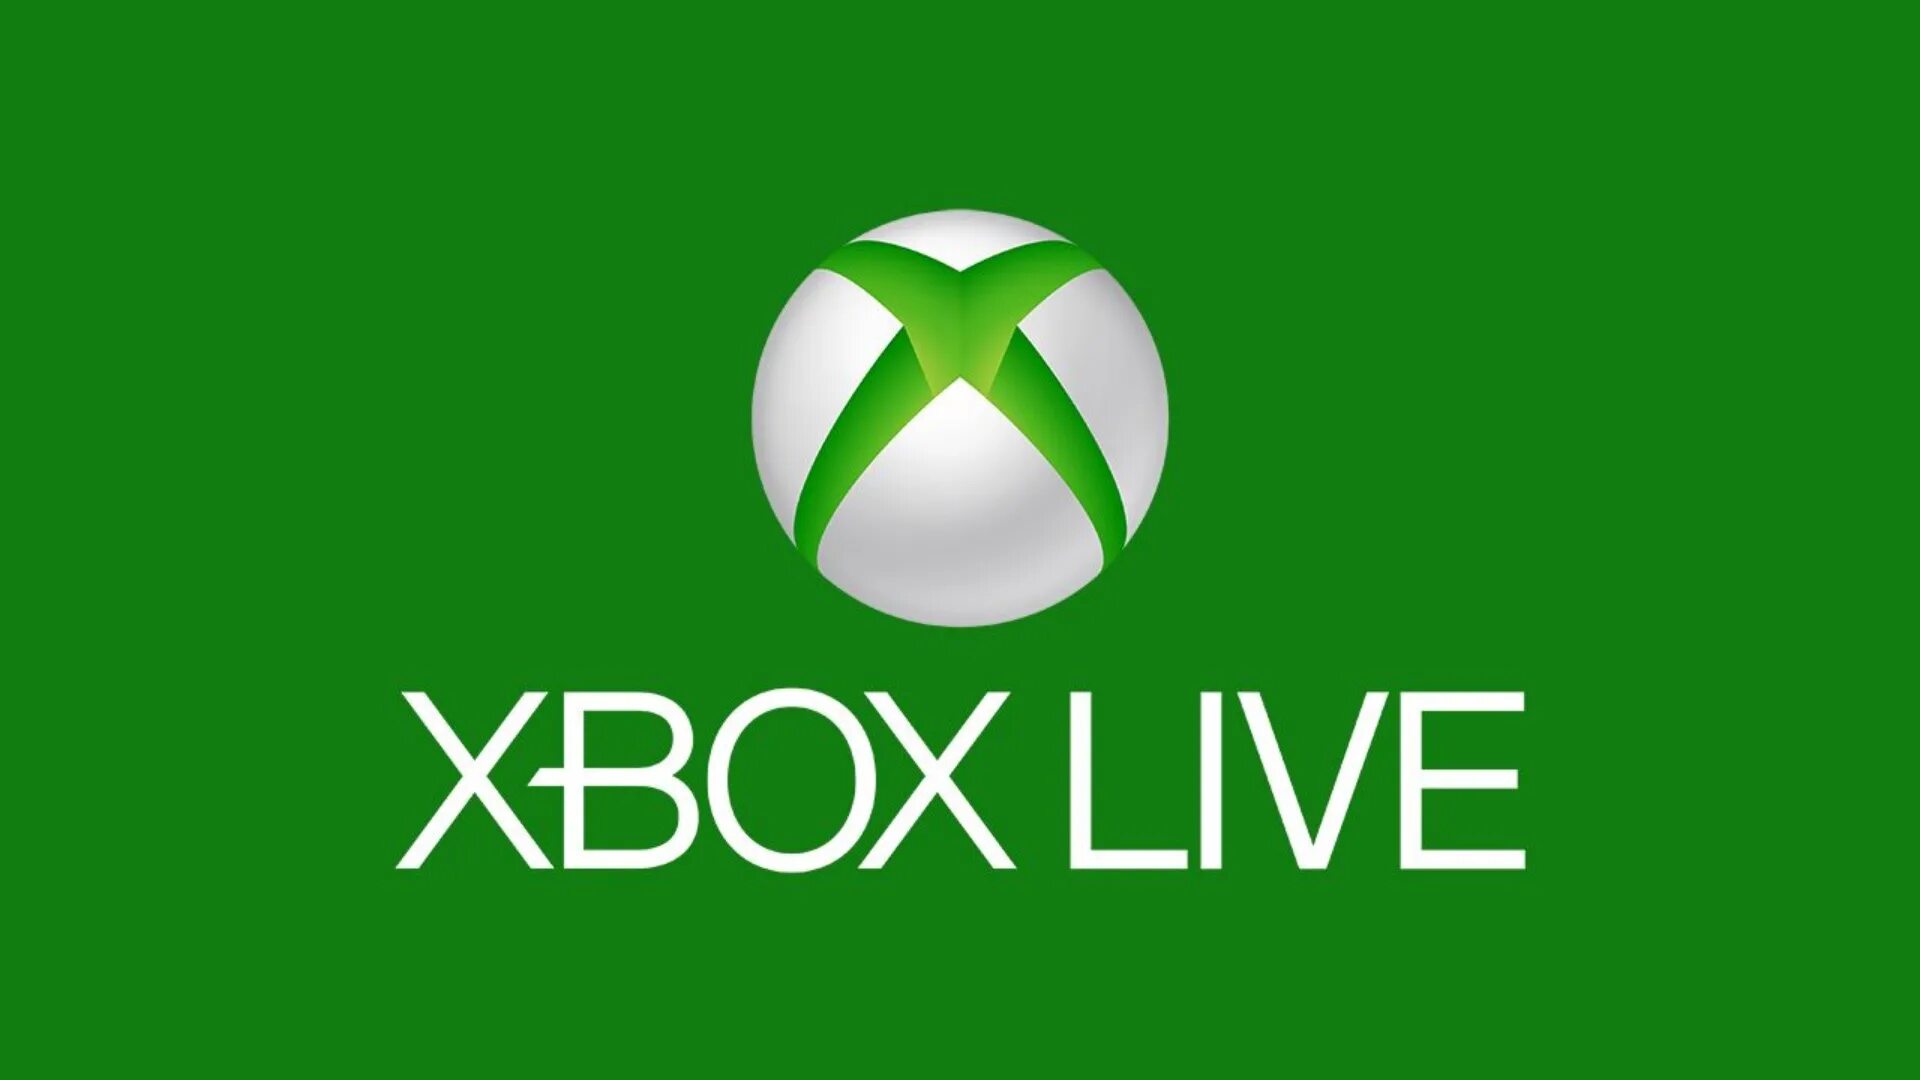 Сеть хбокс. Xbox 360 logo. Xbox Live. Xbox one лого. Xbox Live Xbox 360.